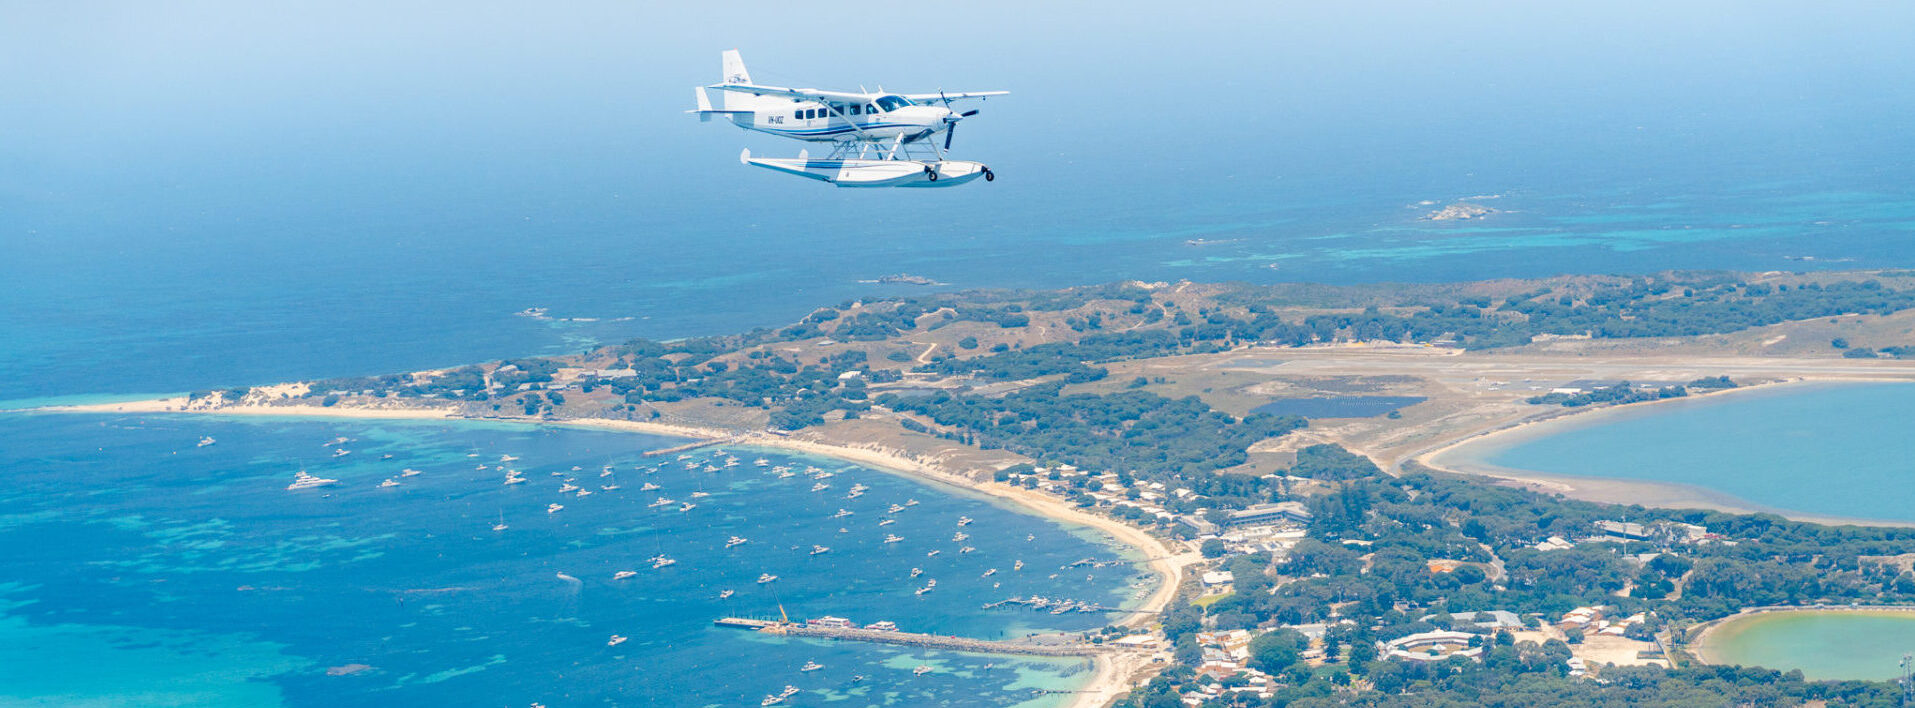 Seaplane flying over Rottnest Island